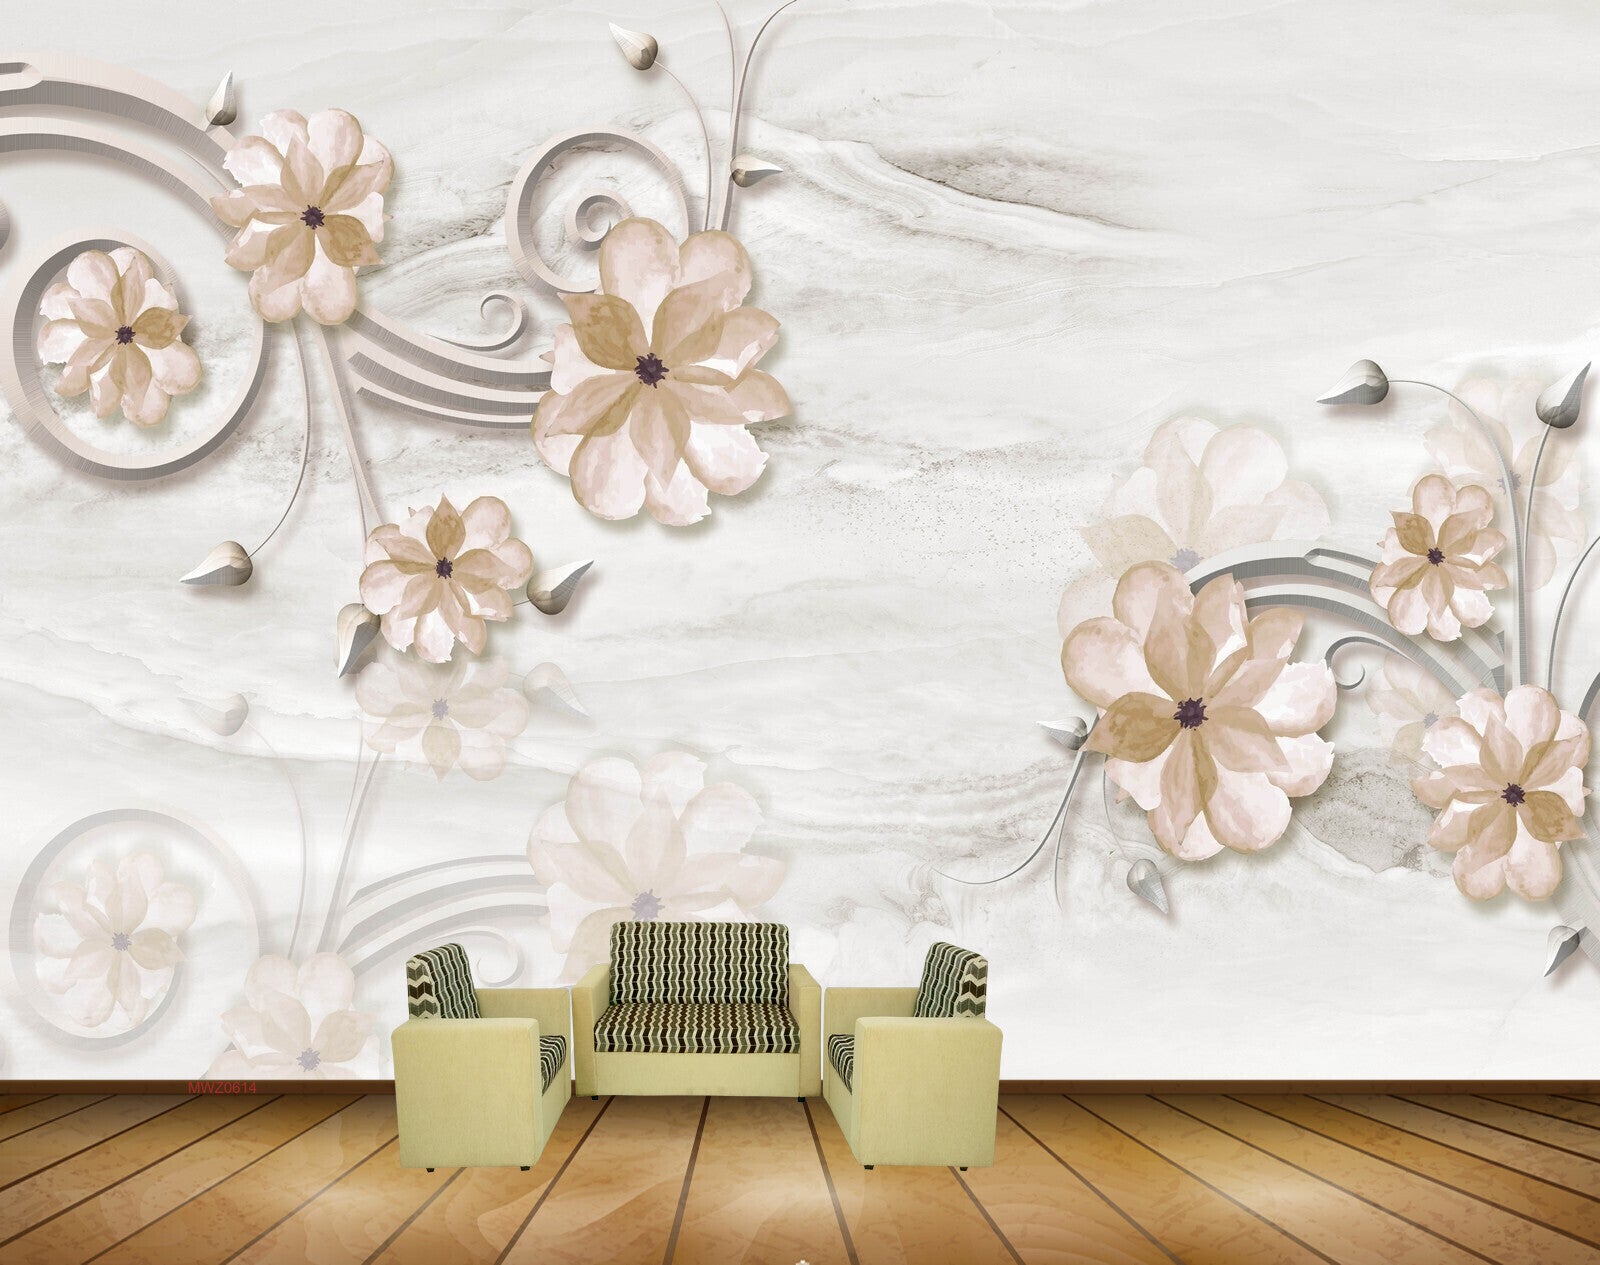 Avikalp MWZ0614 Golden Flowers Leaves 3D HD Wallpaper